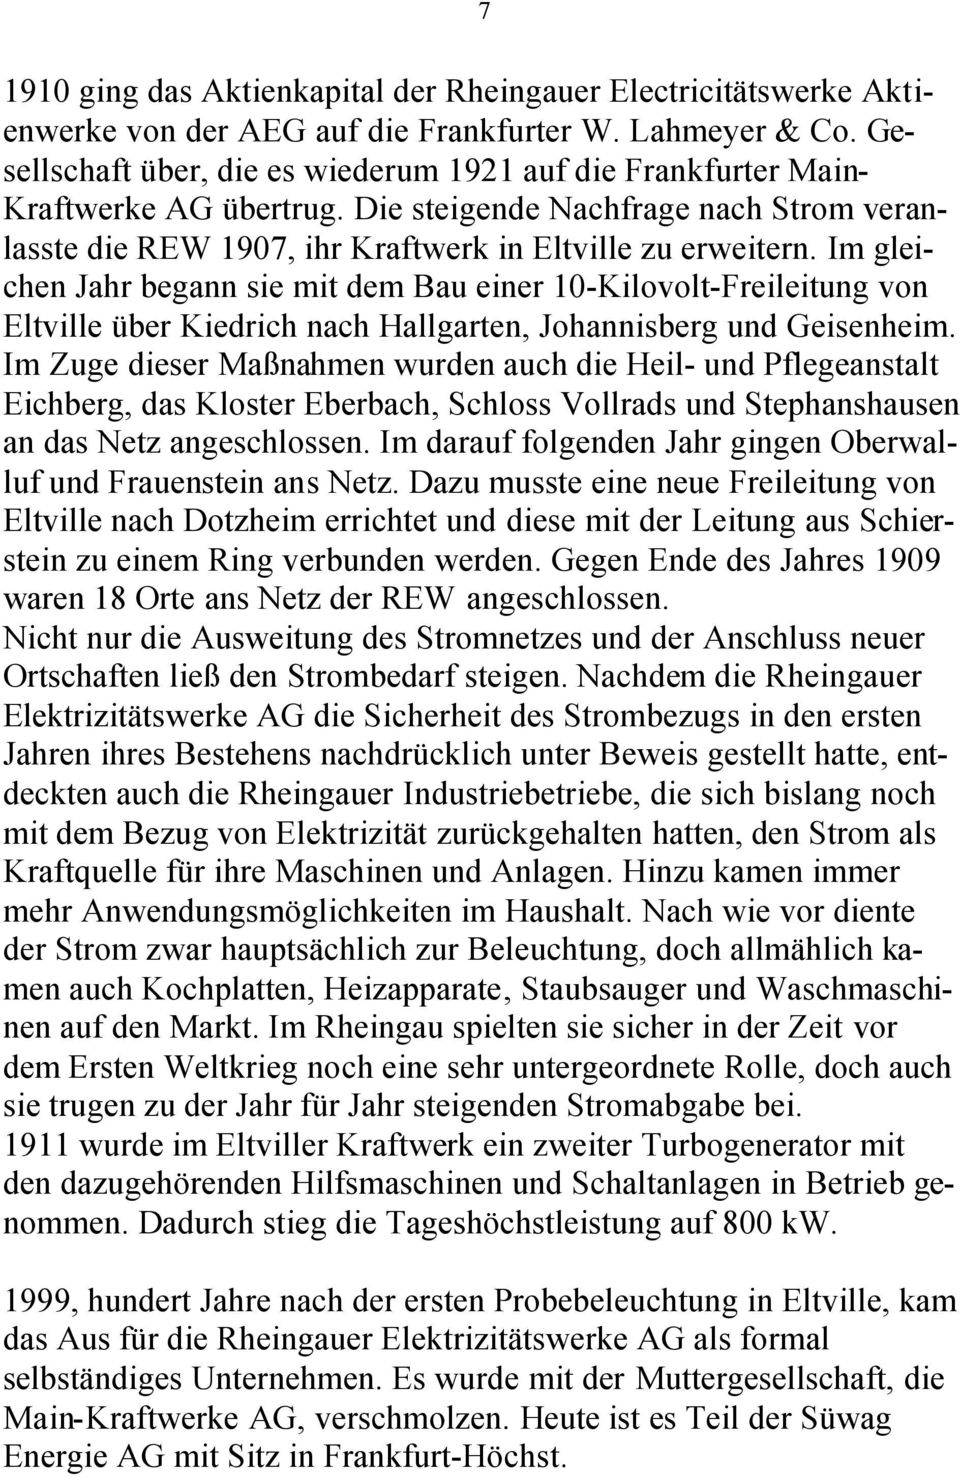 Im gleichen Jahr begann sie mit dem Bau einer 10-Kilovolt-Freileitung von Eltville über Kiedrich nach Hallgarten, Johannisberg und Geisenheim.